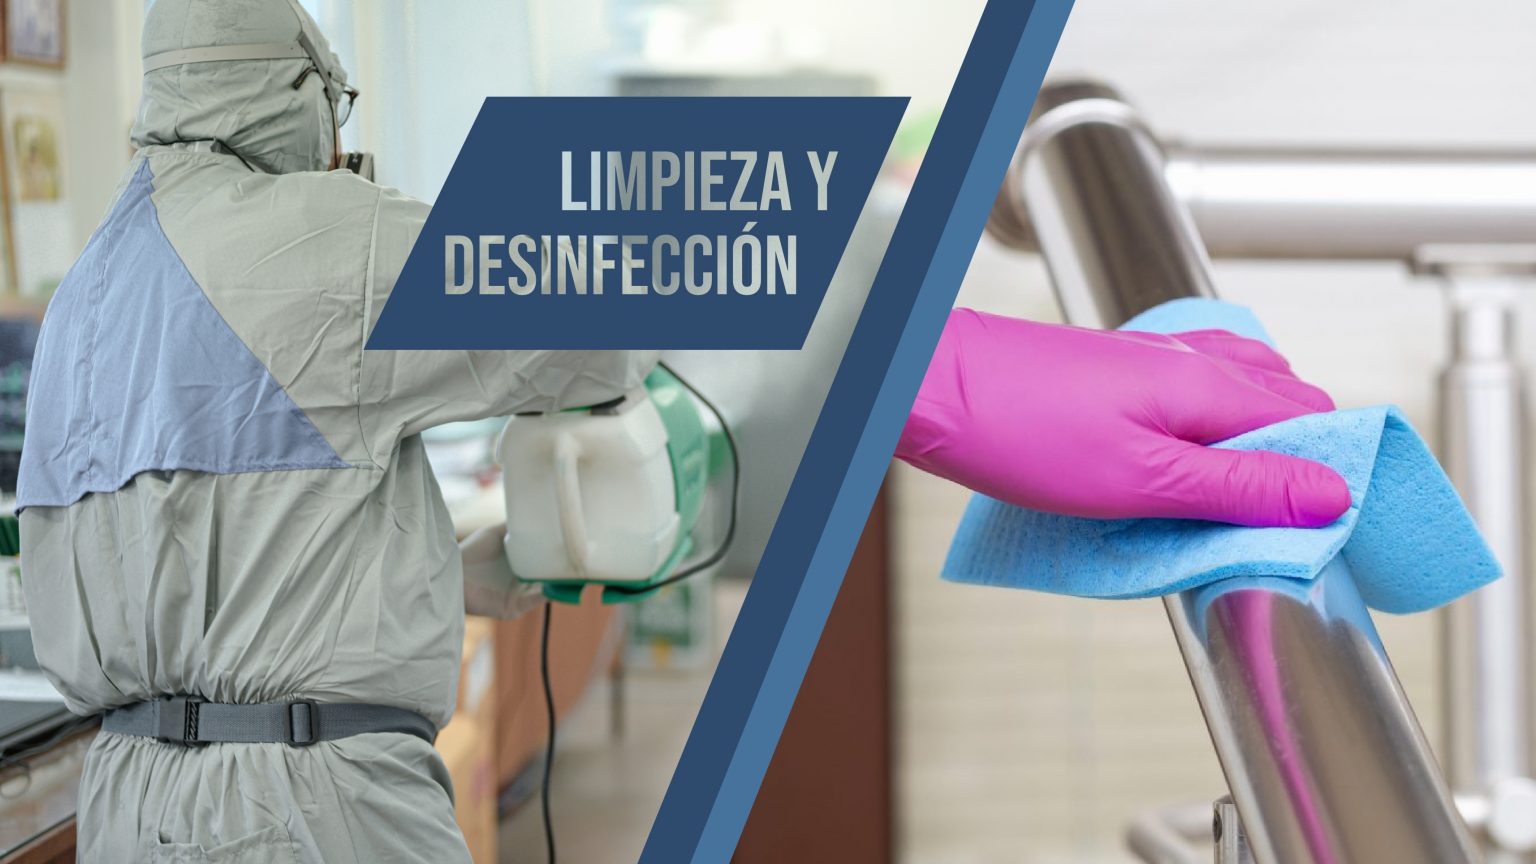 Limpieza Y Desinfección Dos Procesos Inseparables Inoclean 7996